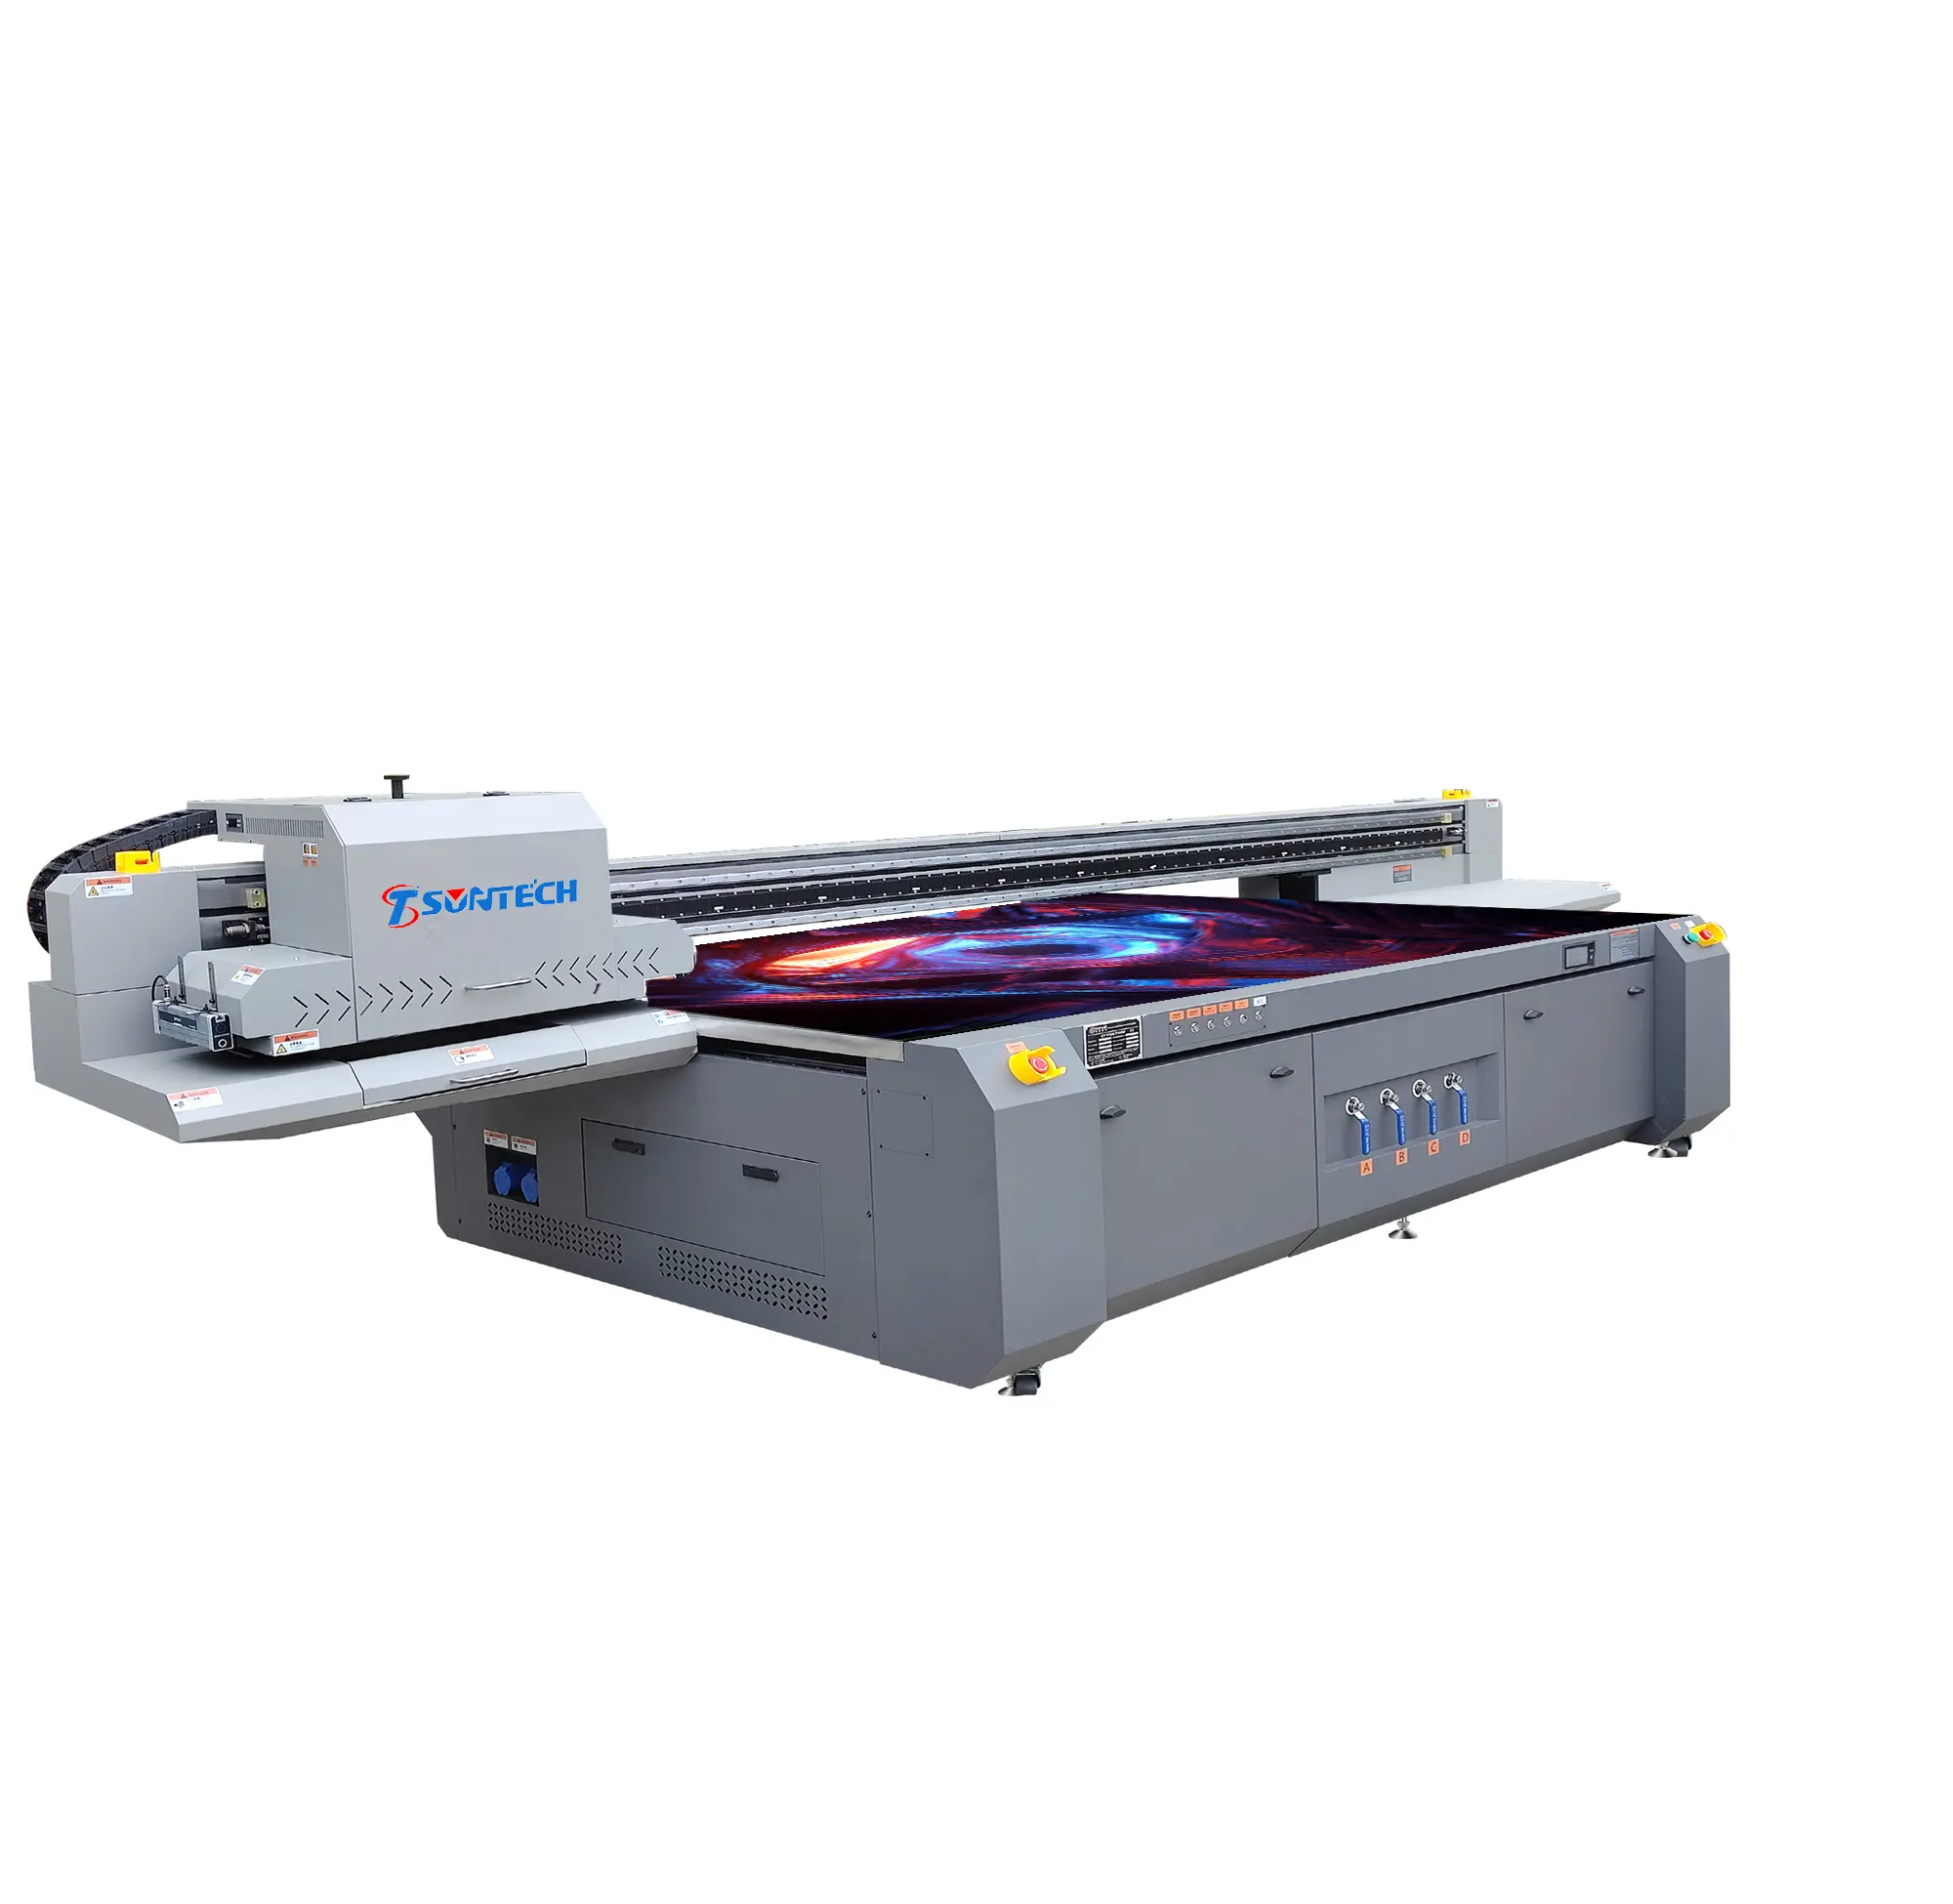 3D efeito UV industrial máquina de impressão plana impressora Uv 3220 para madeira vidro metal acrílico telhas cerâmica plástico